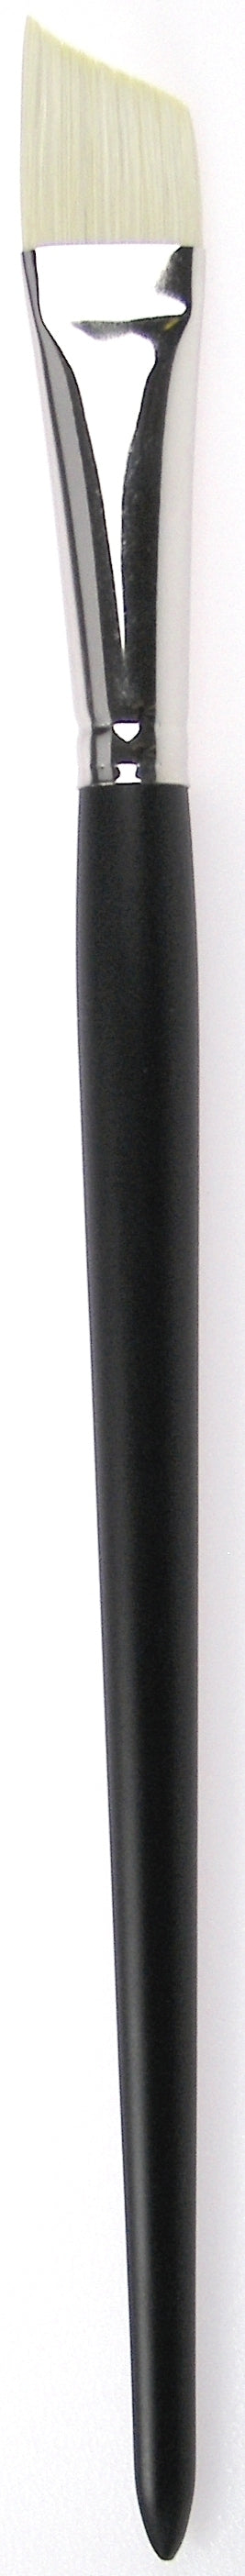 Zahn Oil-Acrylic Brush Angular, Brislon, 9958 Size 10